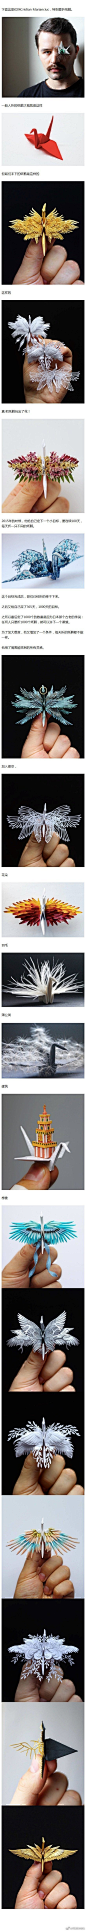 1000天，每天折一只不同的纸鹤，现在这哥们折出的纸鹤美绝了.... ​​​​